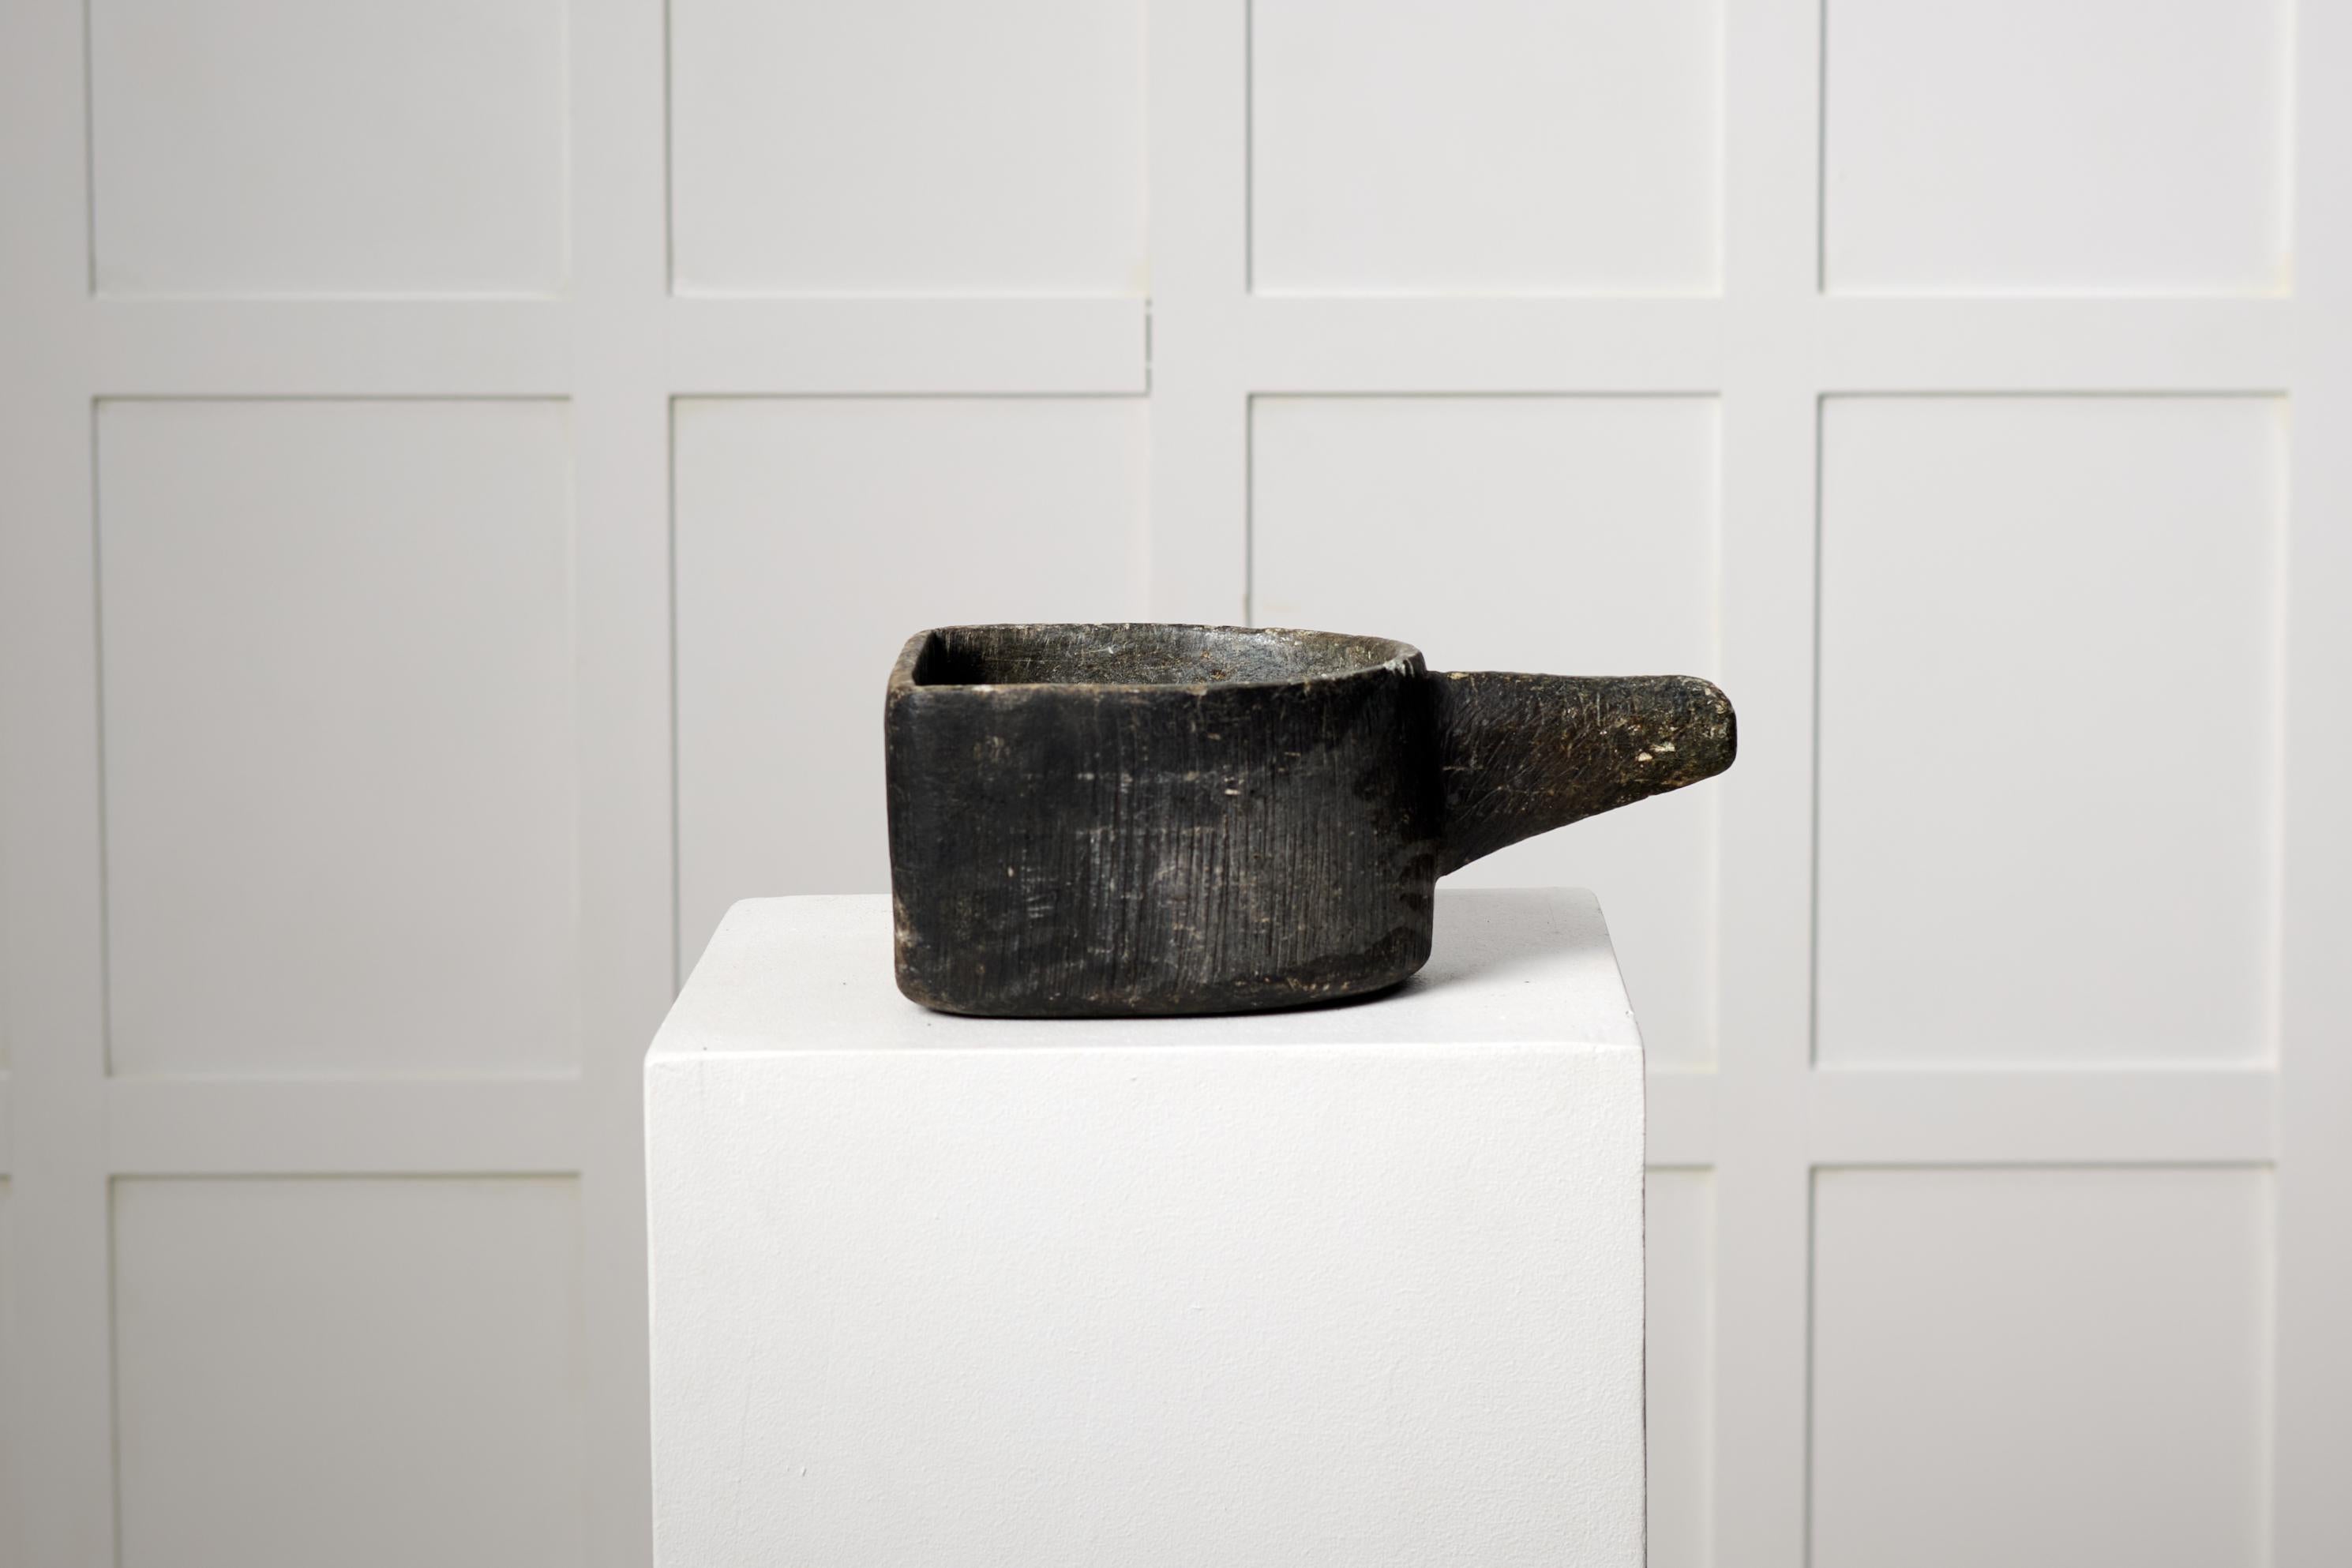 Antiker schwedischer Steintopf aus Speckstein, hergestellt in Nordschweden um 1820 bis 1840. Der Topf wurde für die Zubereitung von Speisen über offenem Feuer verwendet. Handgefertigt aus Speckstein, einer weichen Steinart. Der Topf stammt aus